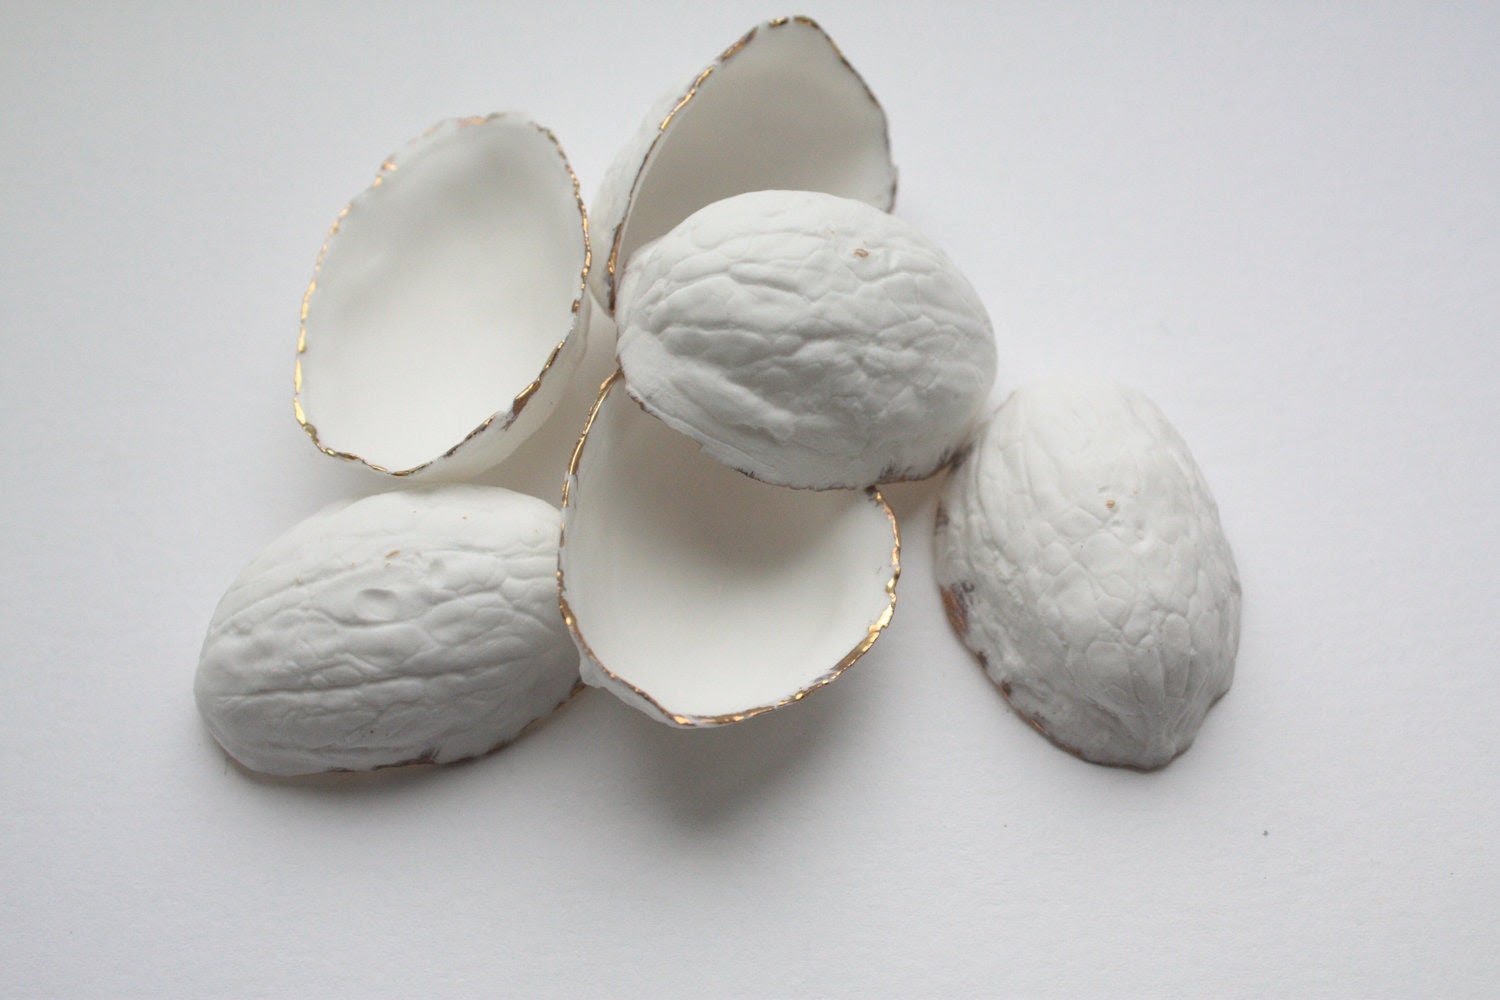 Walnut shells from stoneware English fine bone china and real gold, stoneware porcelain, white ceramic - madebymanos